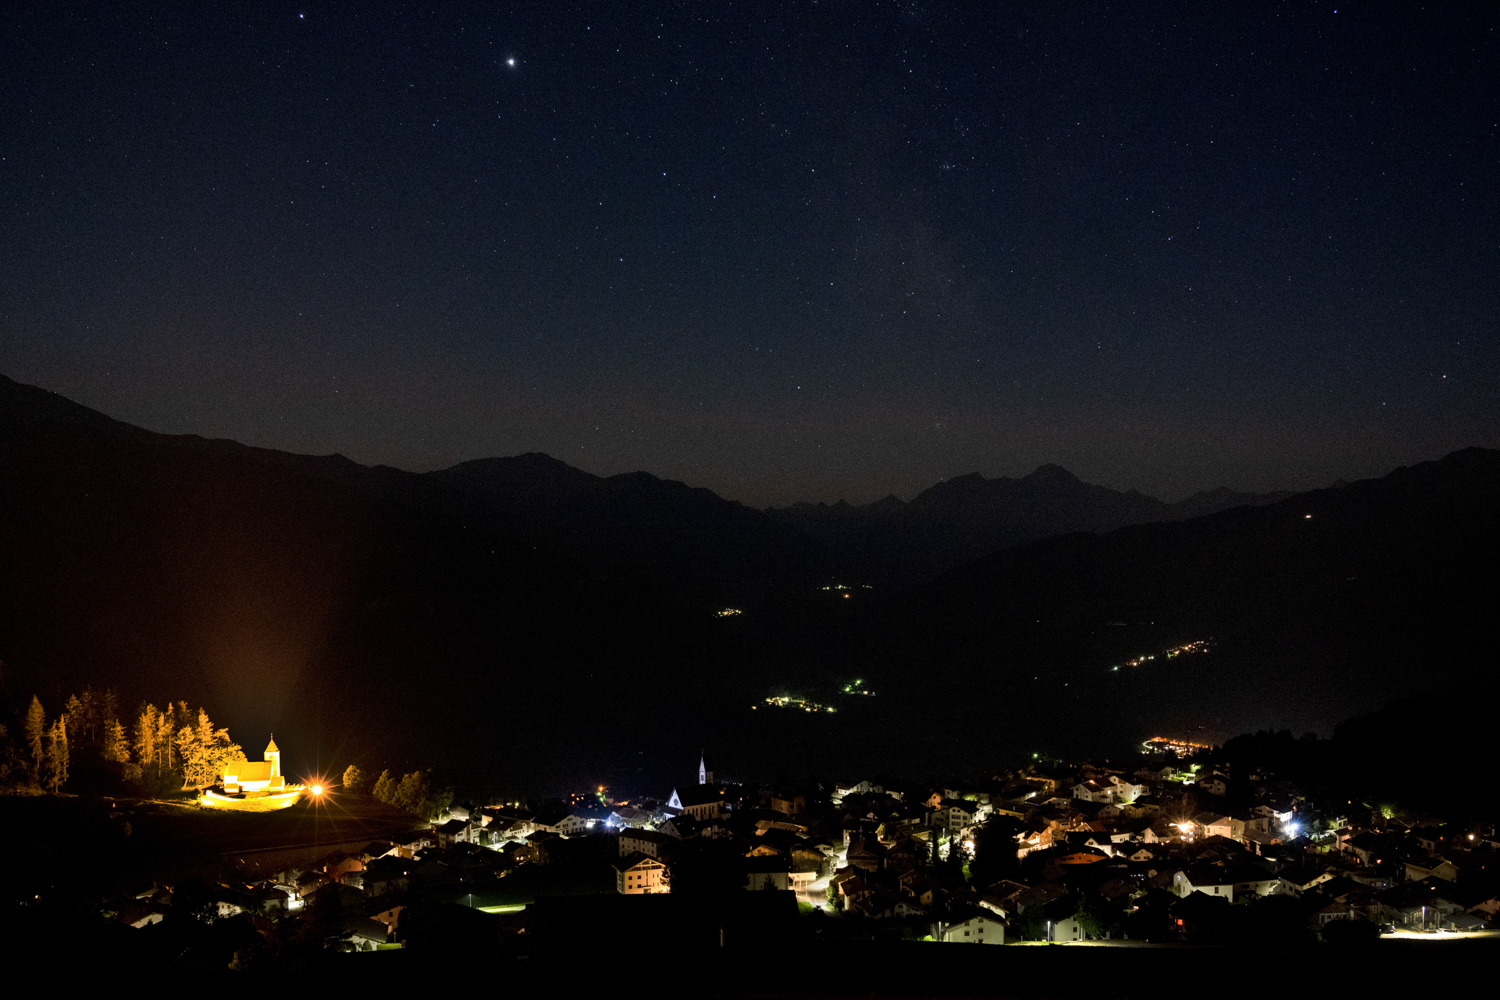 Nachtaufnahme des Südhimmels und des Dorfs Falera in den Schweizer Alpen. Gut zu sehen ist die Lichtverschmutzung durch die Beleuchtung der Kirche.